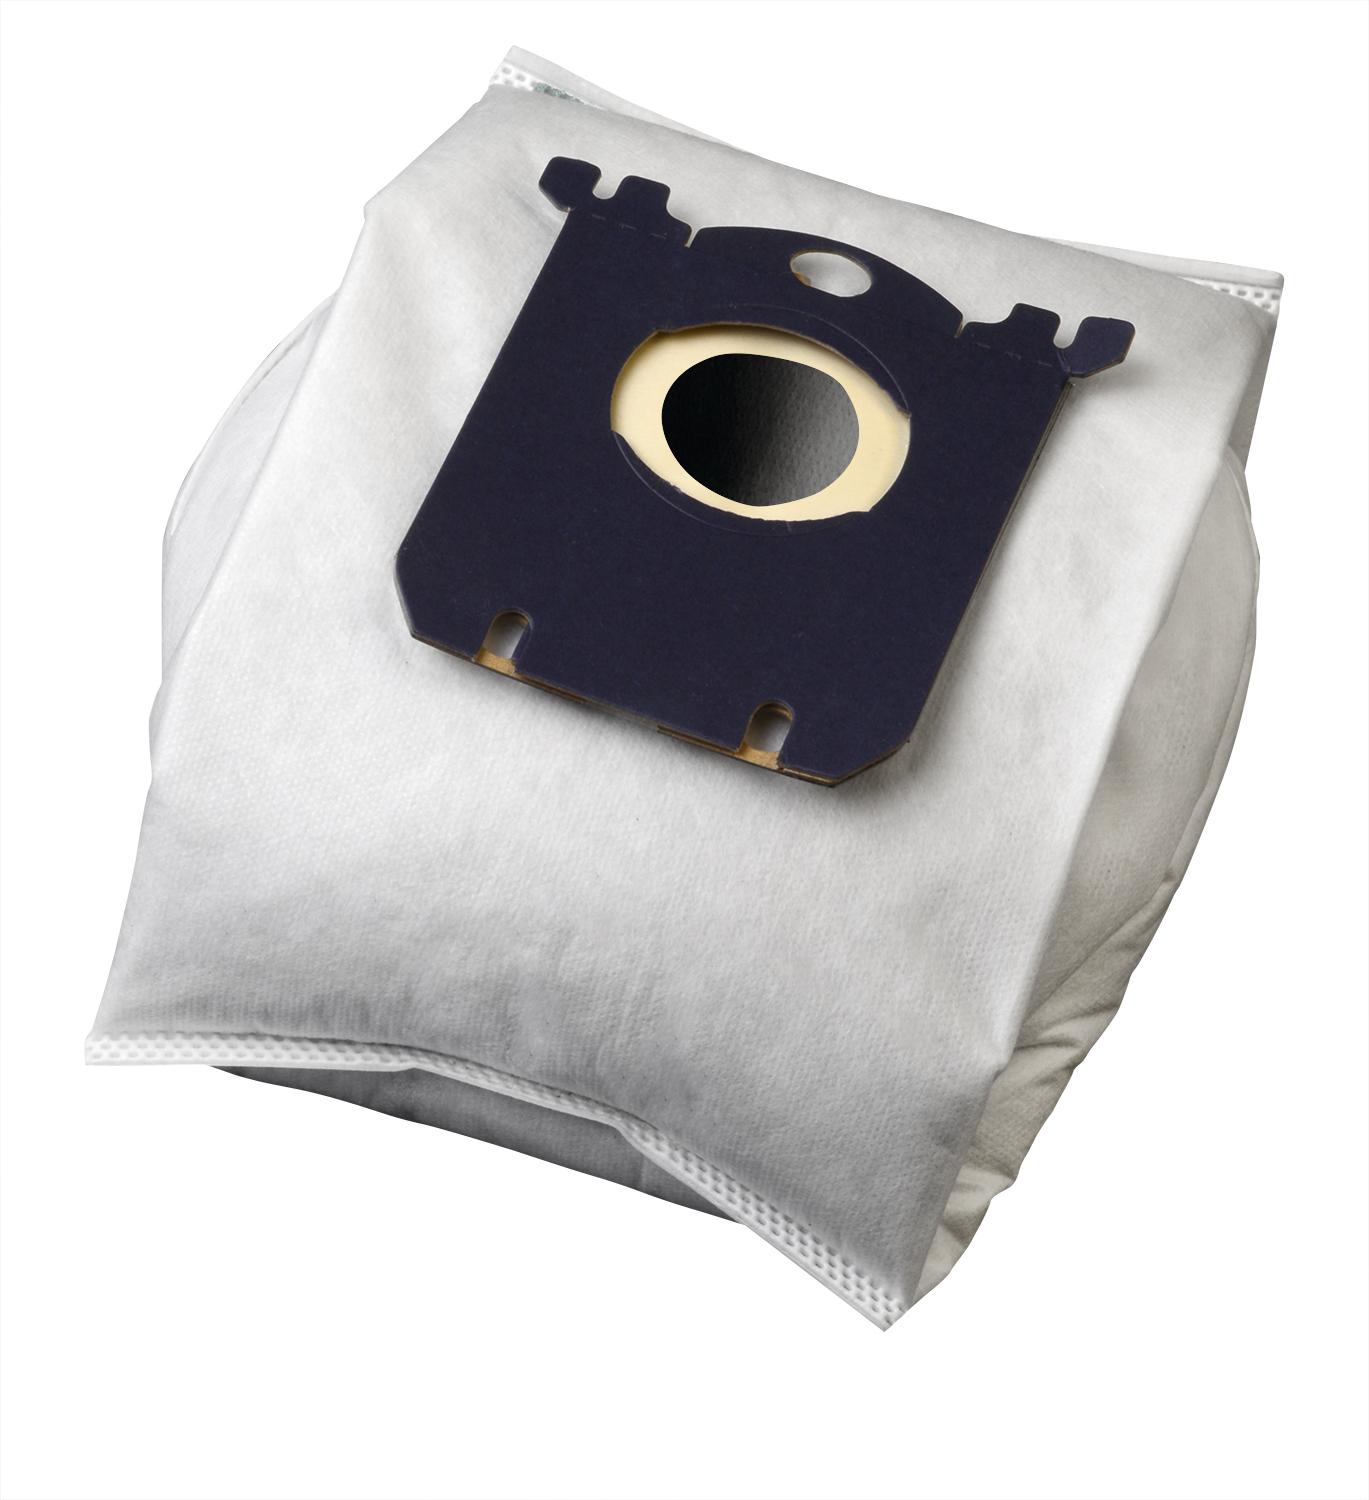 Koma SB02S - Sáčky do vysavače Electrolux Multi Bag textilní - kompatibilní se sáčky typu S-bag, 5ks v balení